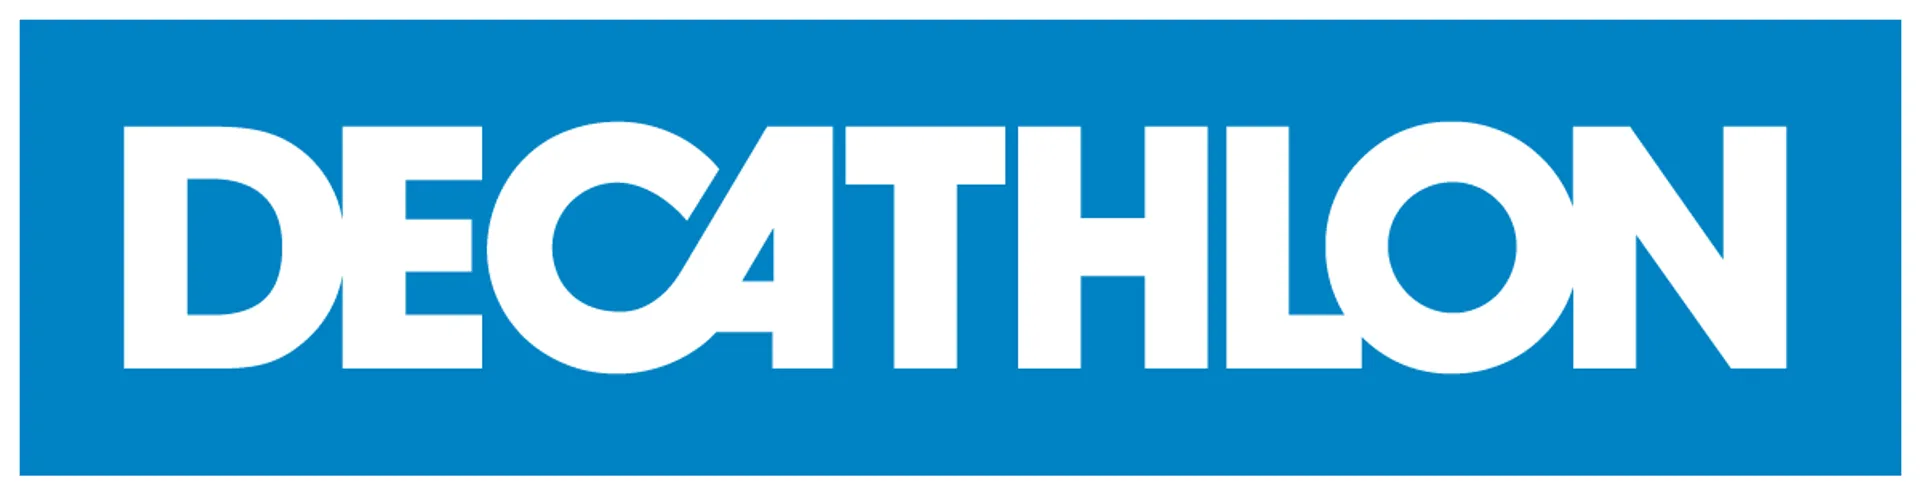 DECATHLON logo de catálogo